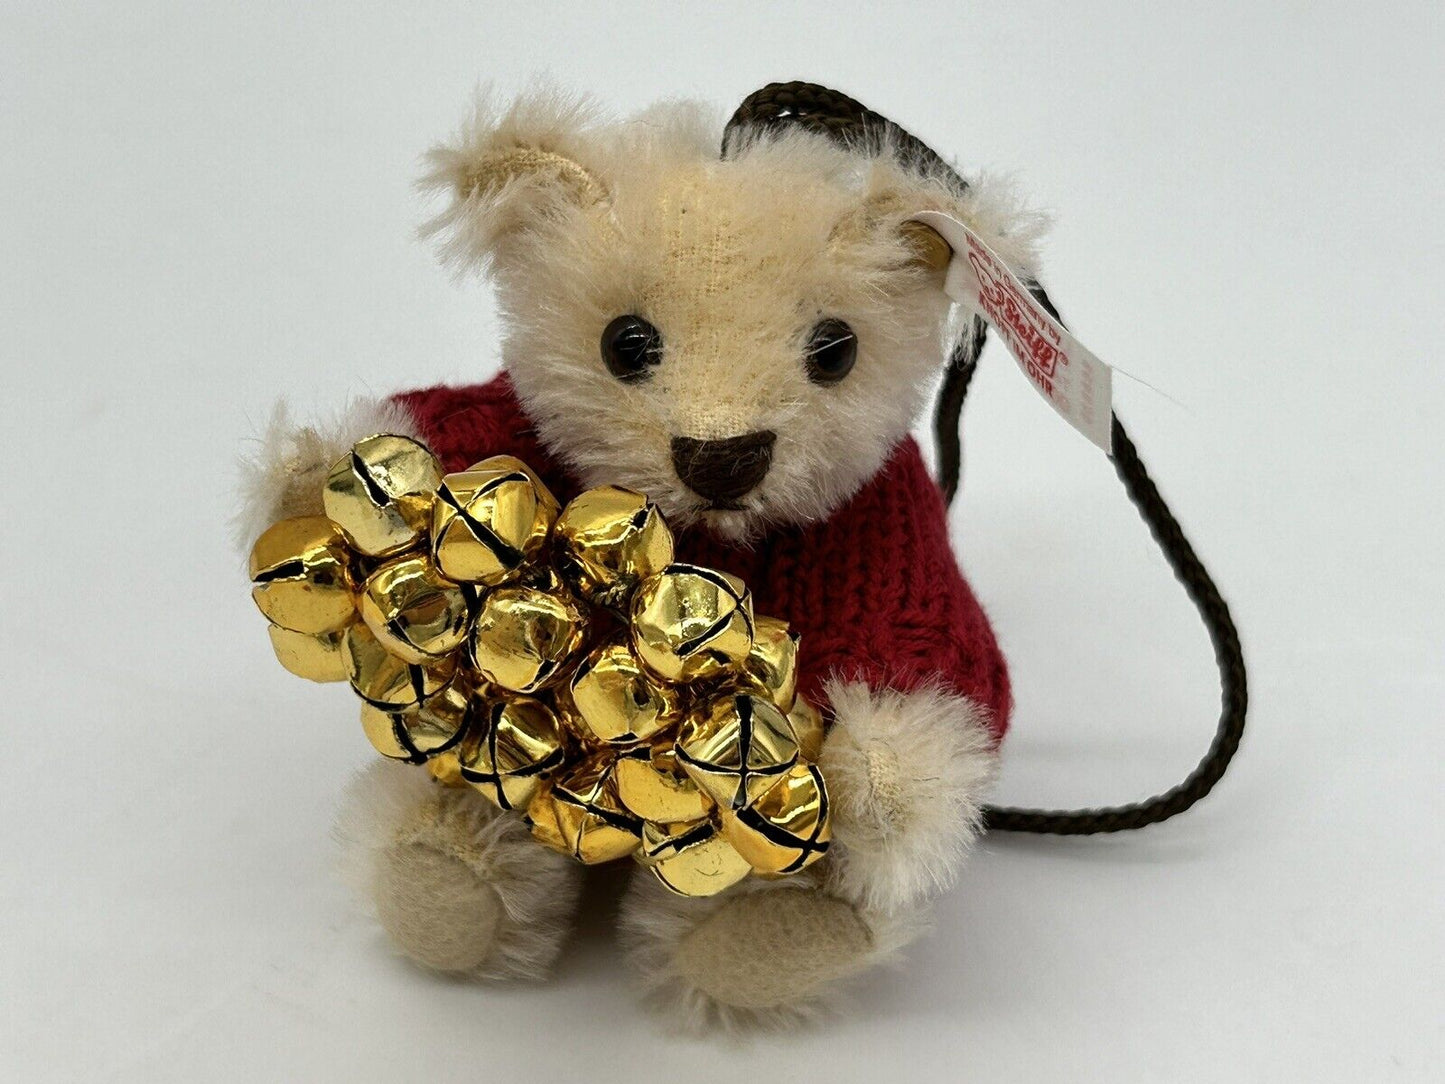 Steiff 668630 Teddybär Teddy with Wreath Ornament limitiert 1500 aus 2006 Mohair